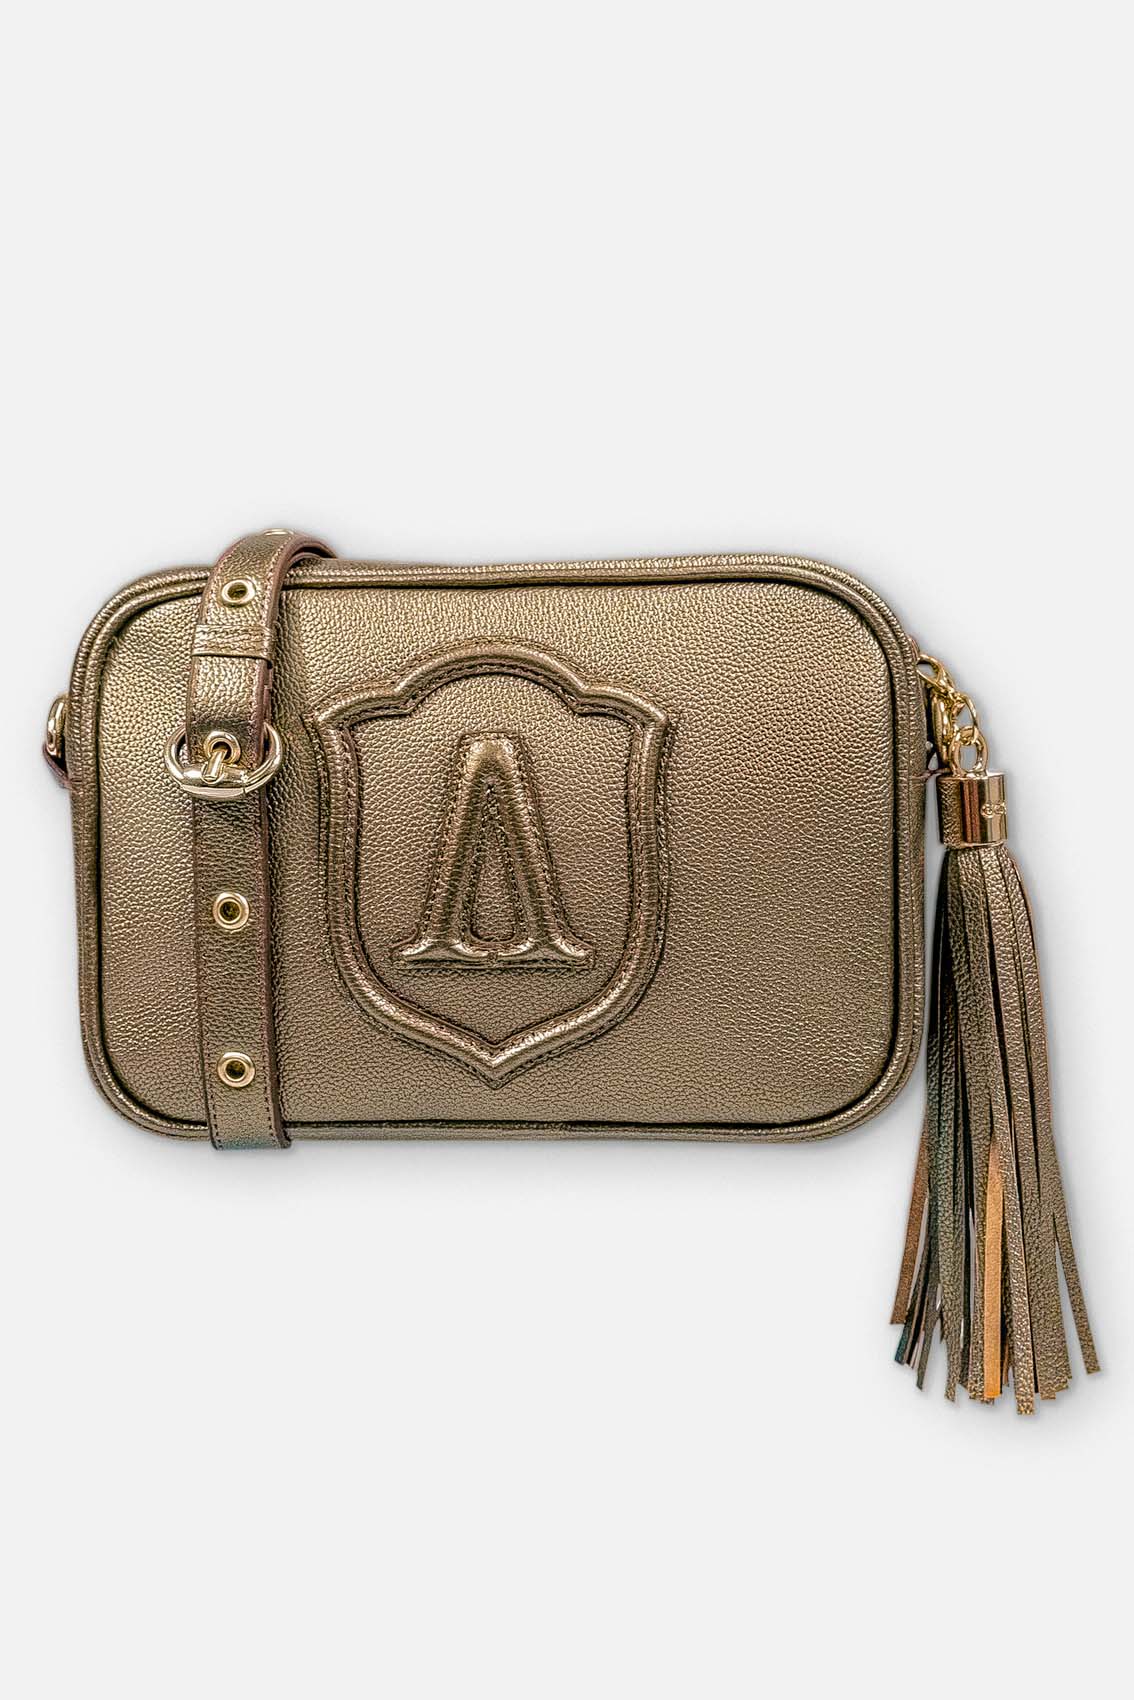 Shoulder bag made of leather with tassel